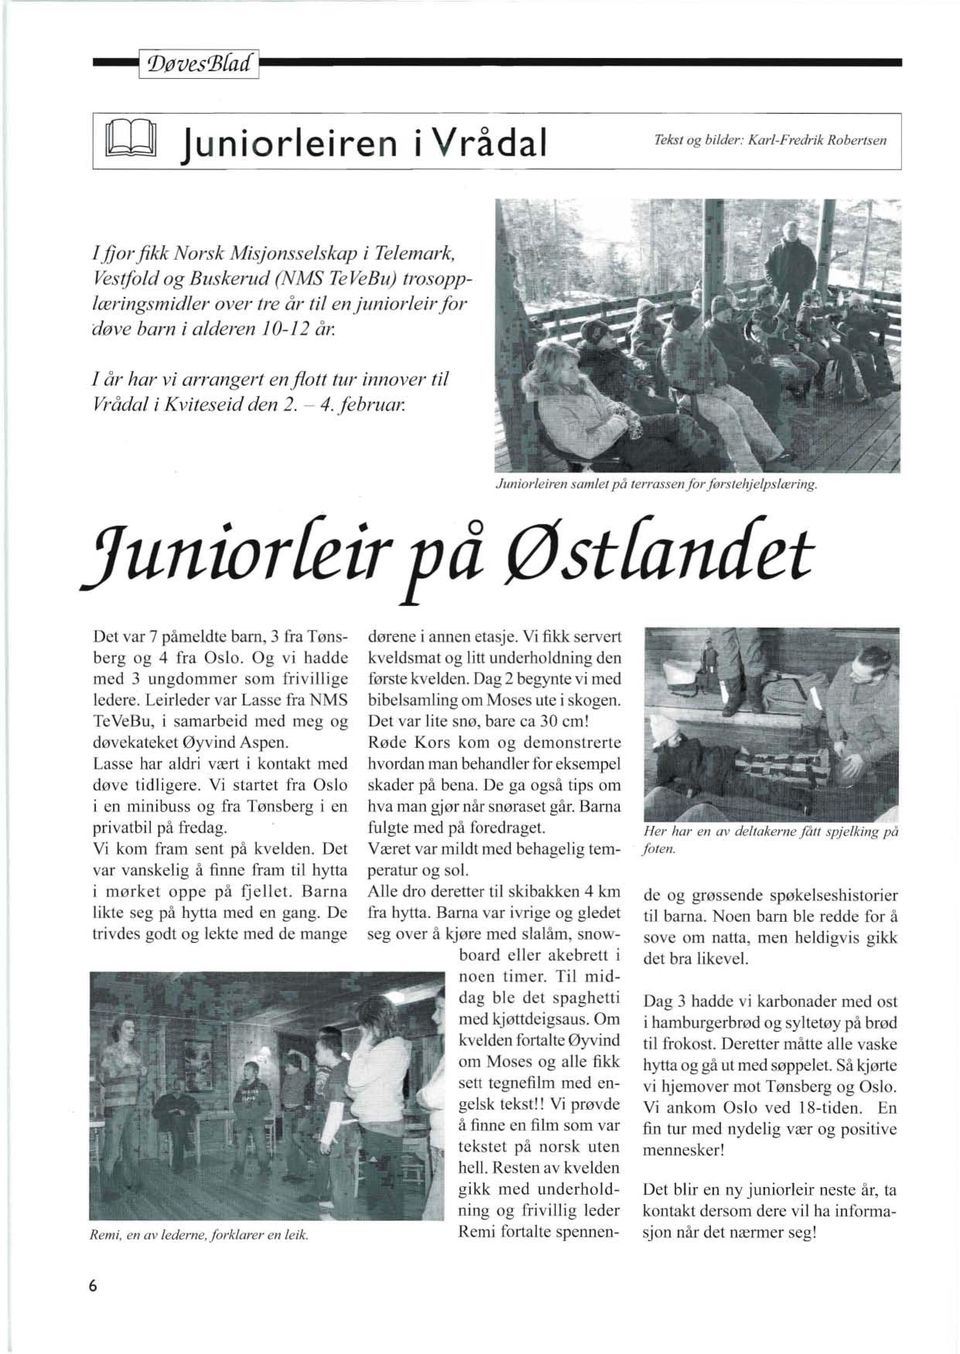 Juniorleiren samlet på terrassen forførstehjelpslæring. Juniorfeirpå Østfancfet Det var 7 påmeldte barn, 3 fra Tønsberg og 4 fra Oslo. Og vi hadde med 3 ungdommer som frivillige ledere.